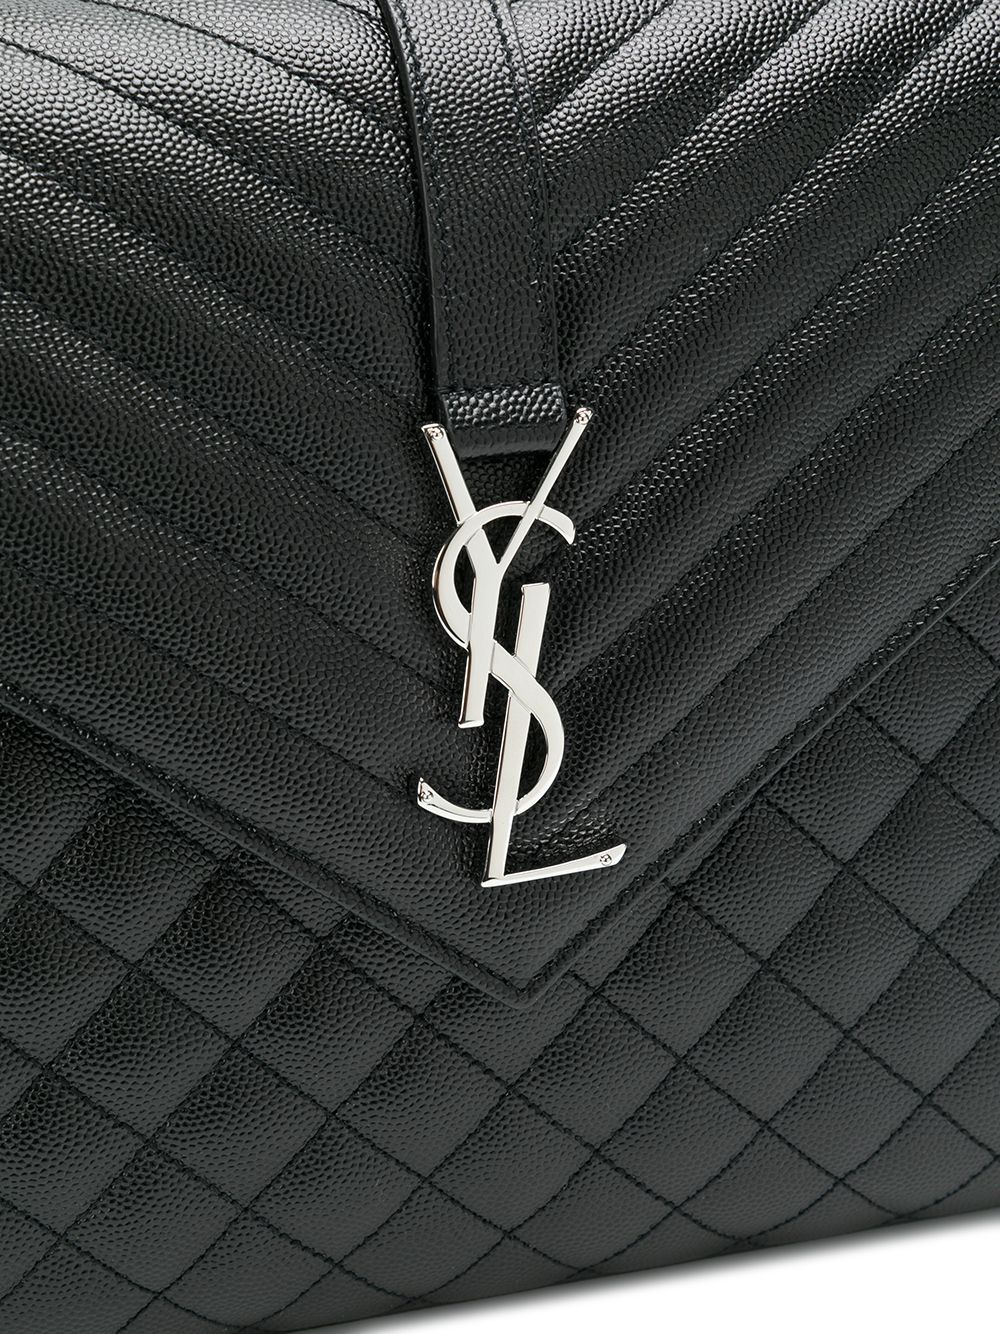 Yves Saint Laurent, Bags, Ysl Classic Large Monogram Envelope Bag